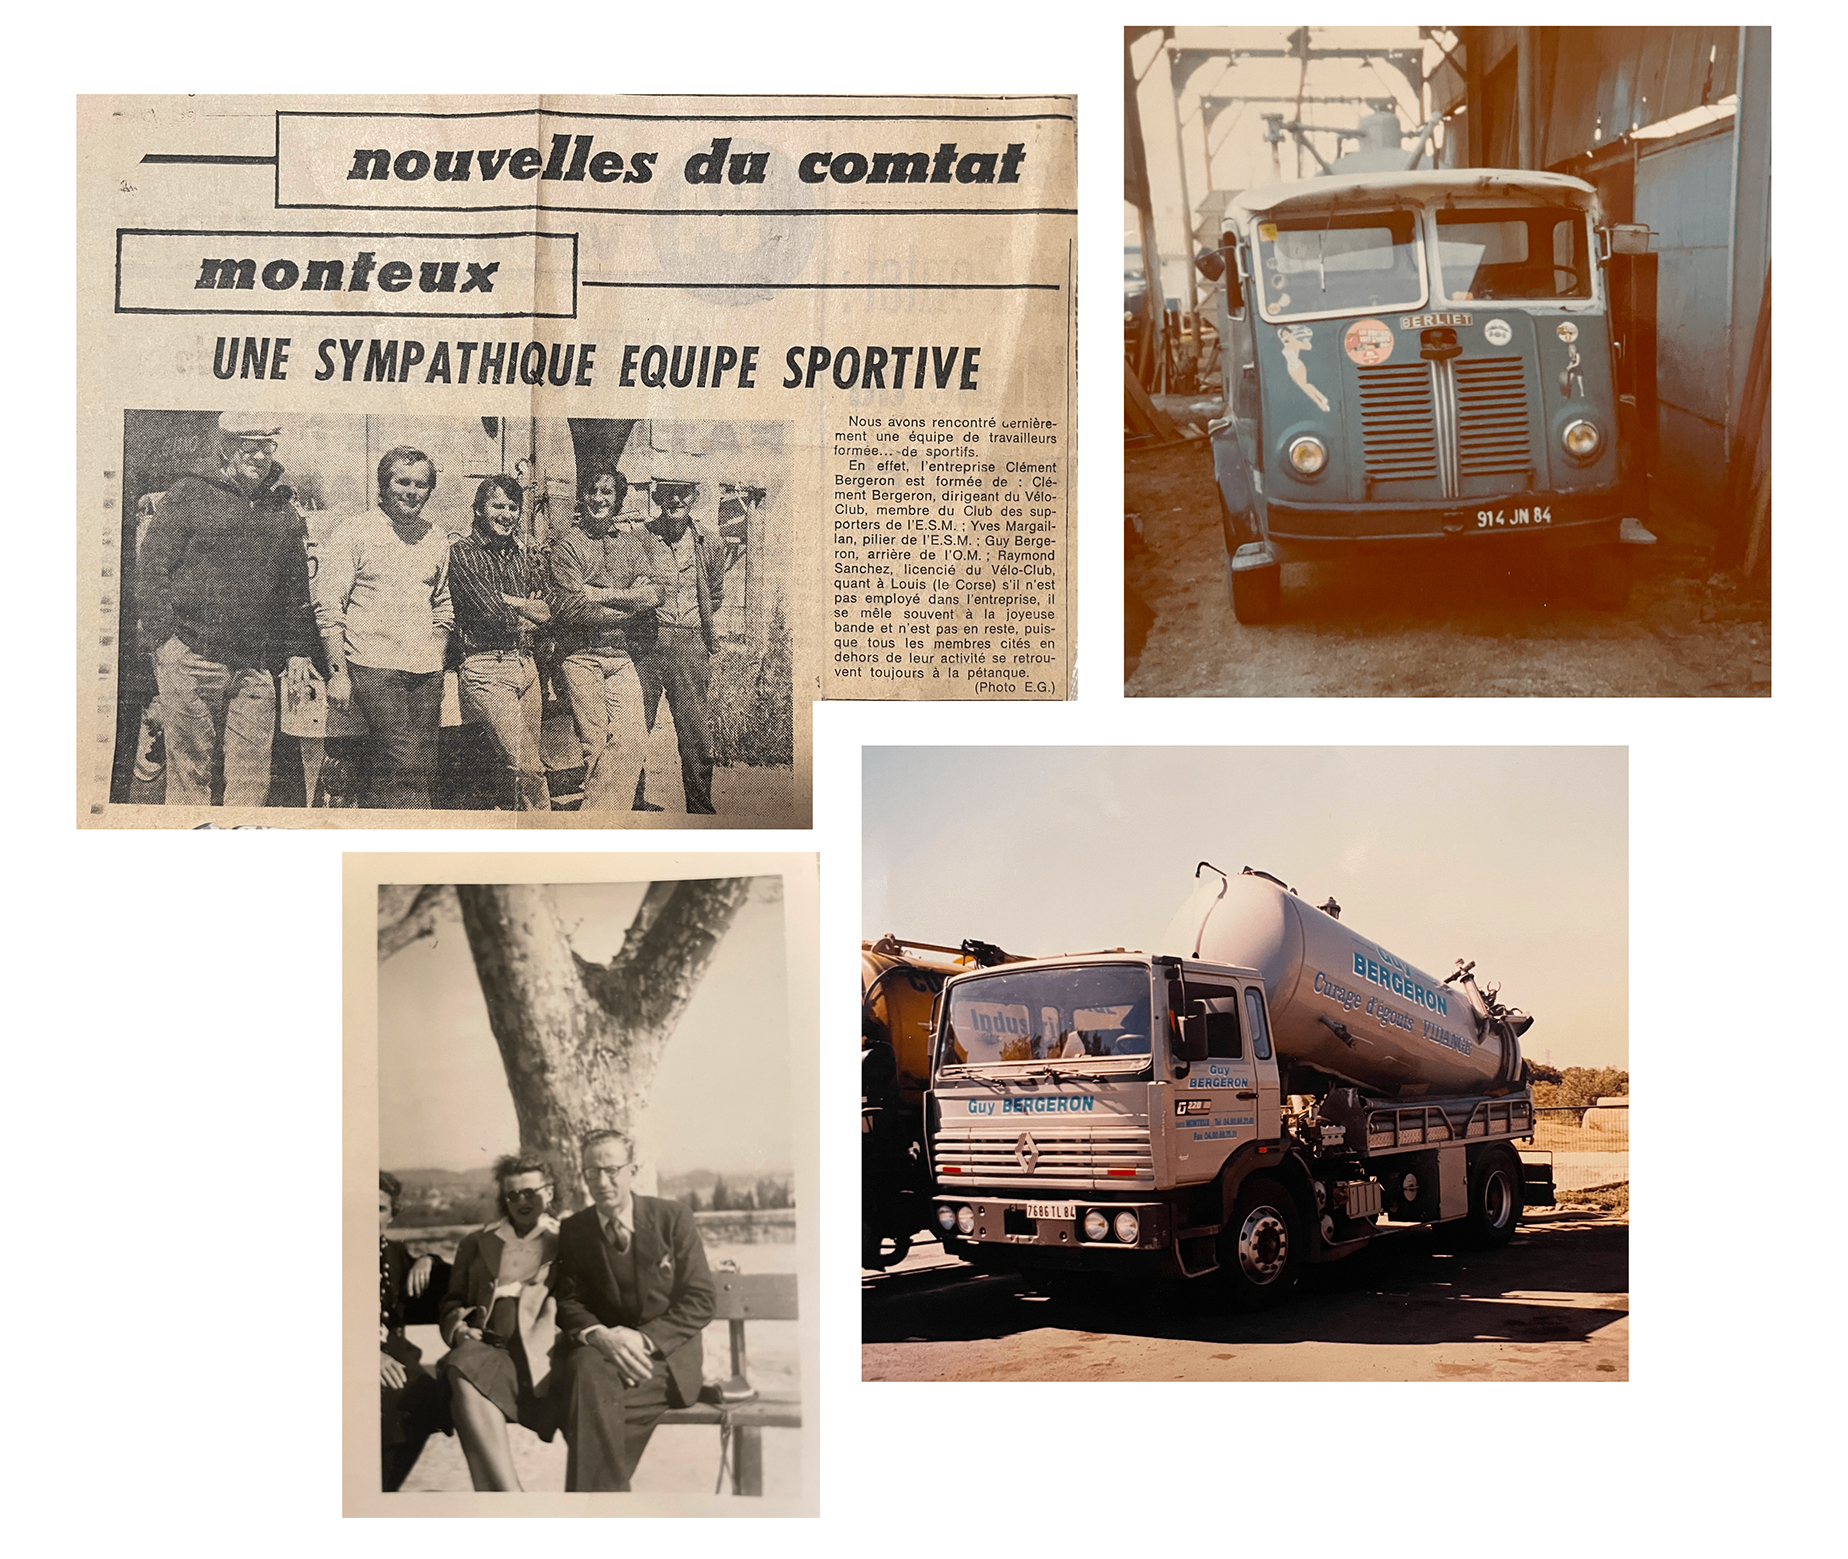 SARL Bergeron à Monteux - Plus de 70 ans d'expérience dans les domaines de l'assainissement, vidange et désinsectisation depuis trois générations